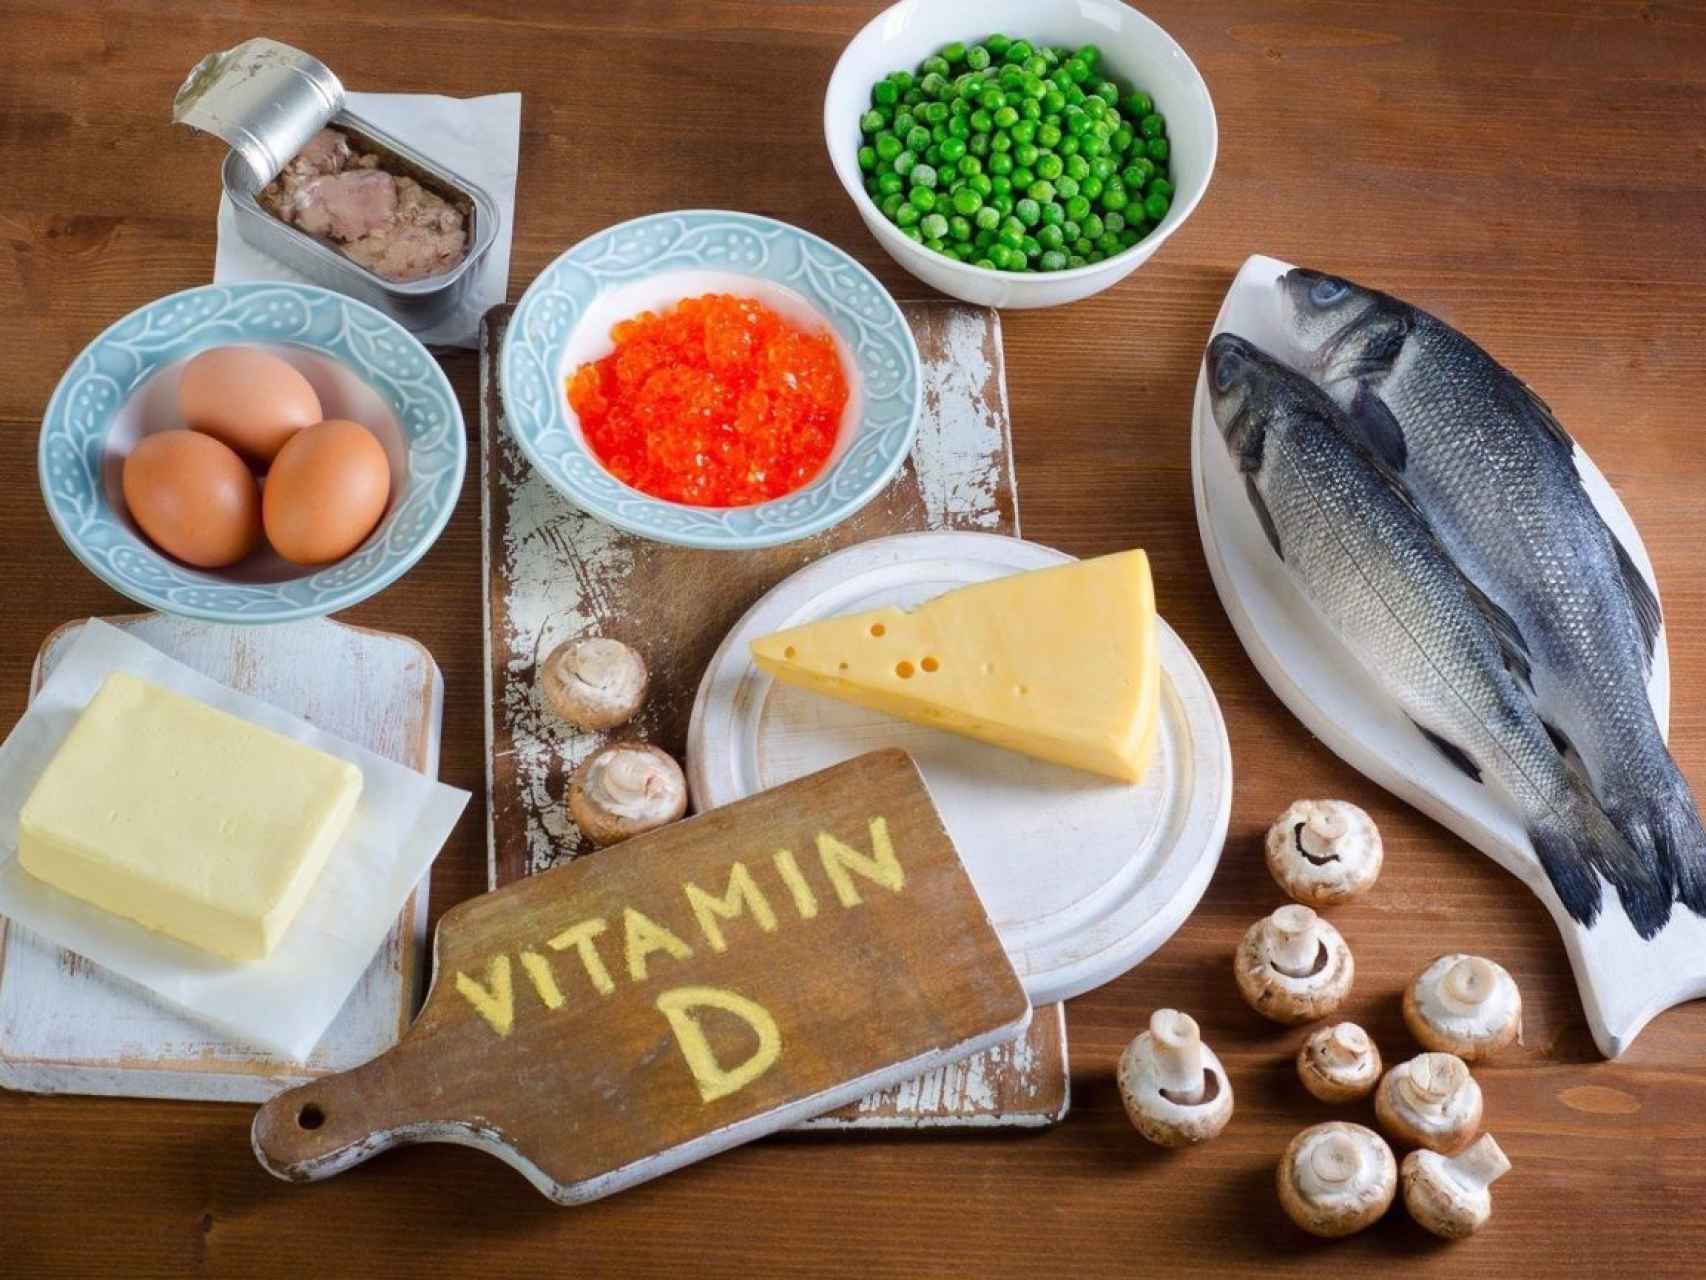 Alimentos con Vitamina D